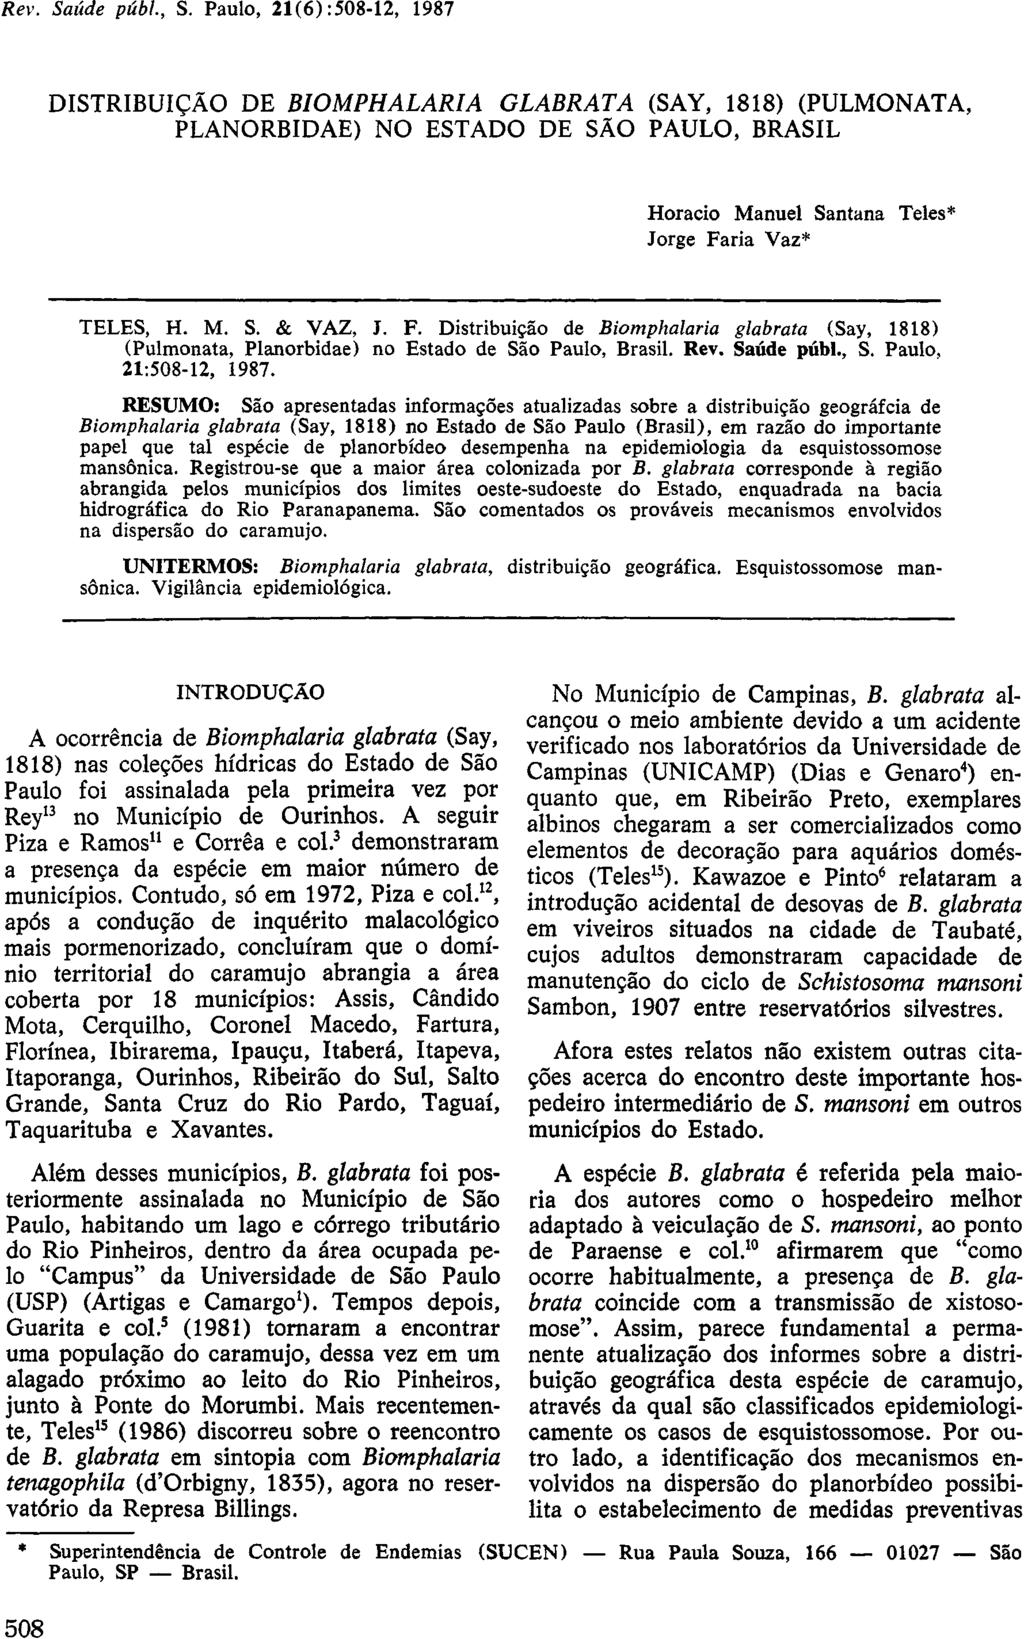 DISTRIBUIÇÃO DE BIOMPHALARIA GLABRATA (SAY, 1818) (PULMONATA, PLANORBIDAE) NO ESTADO DE SÃO PAULO, BRASIL Horacio Manuel Santana Teles* Jorge Fa